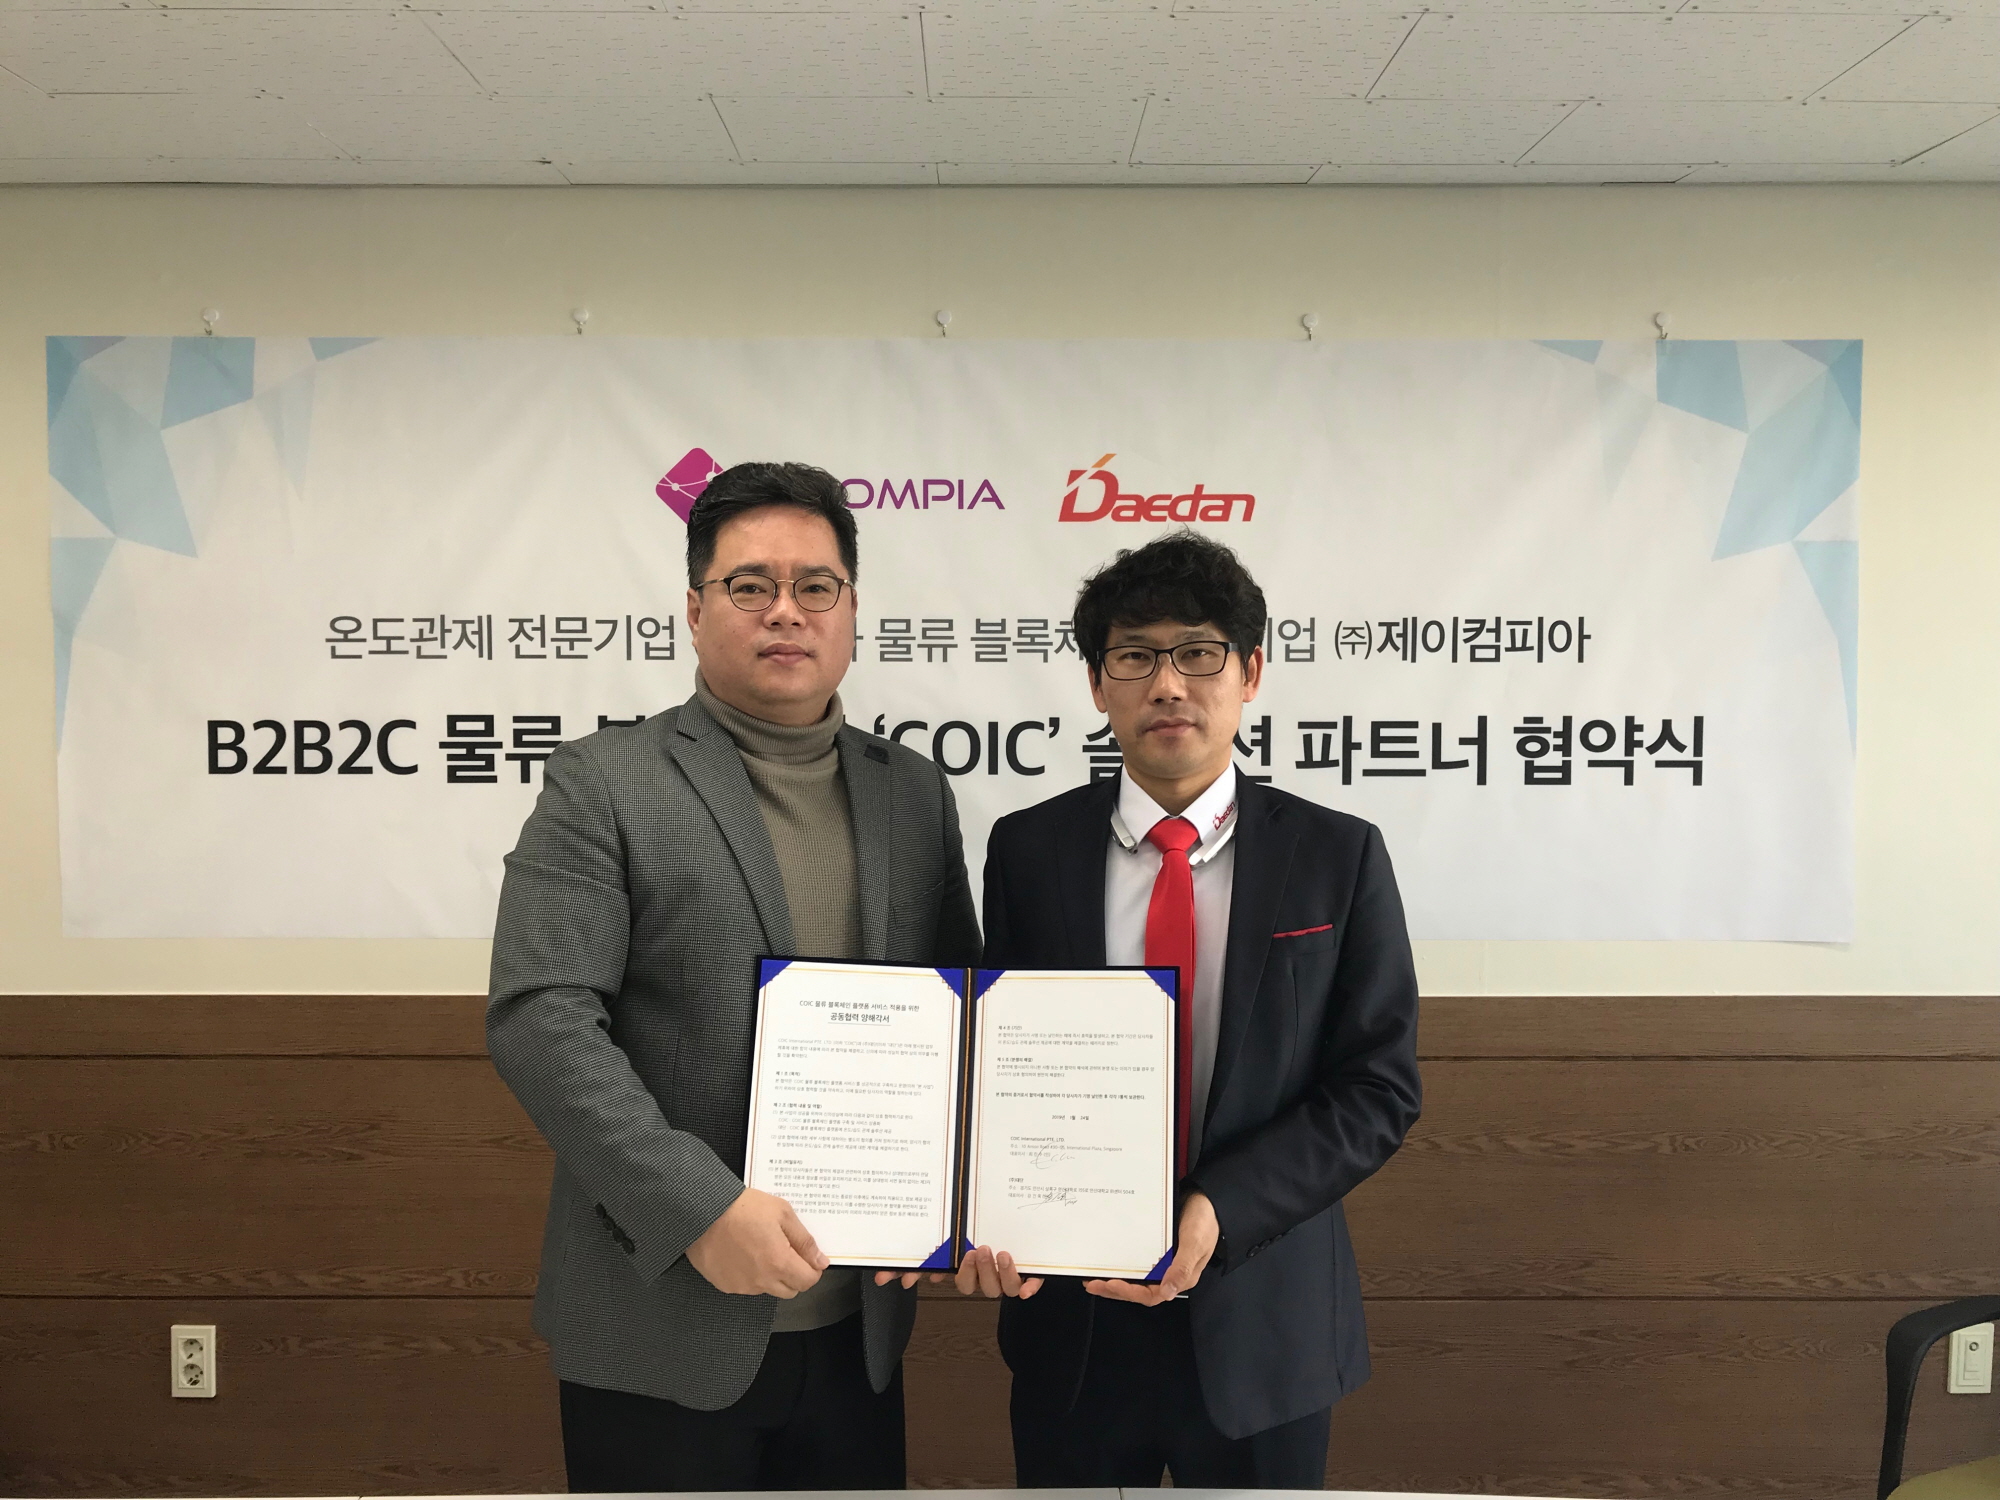 ▲  | (왼쪽부터) 최진수 제이컴피아 대표, 강건욱 대단 대표